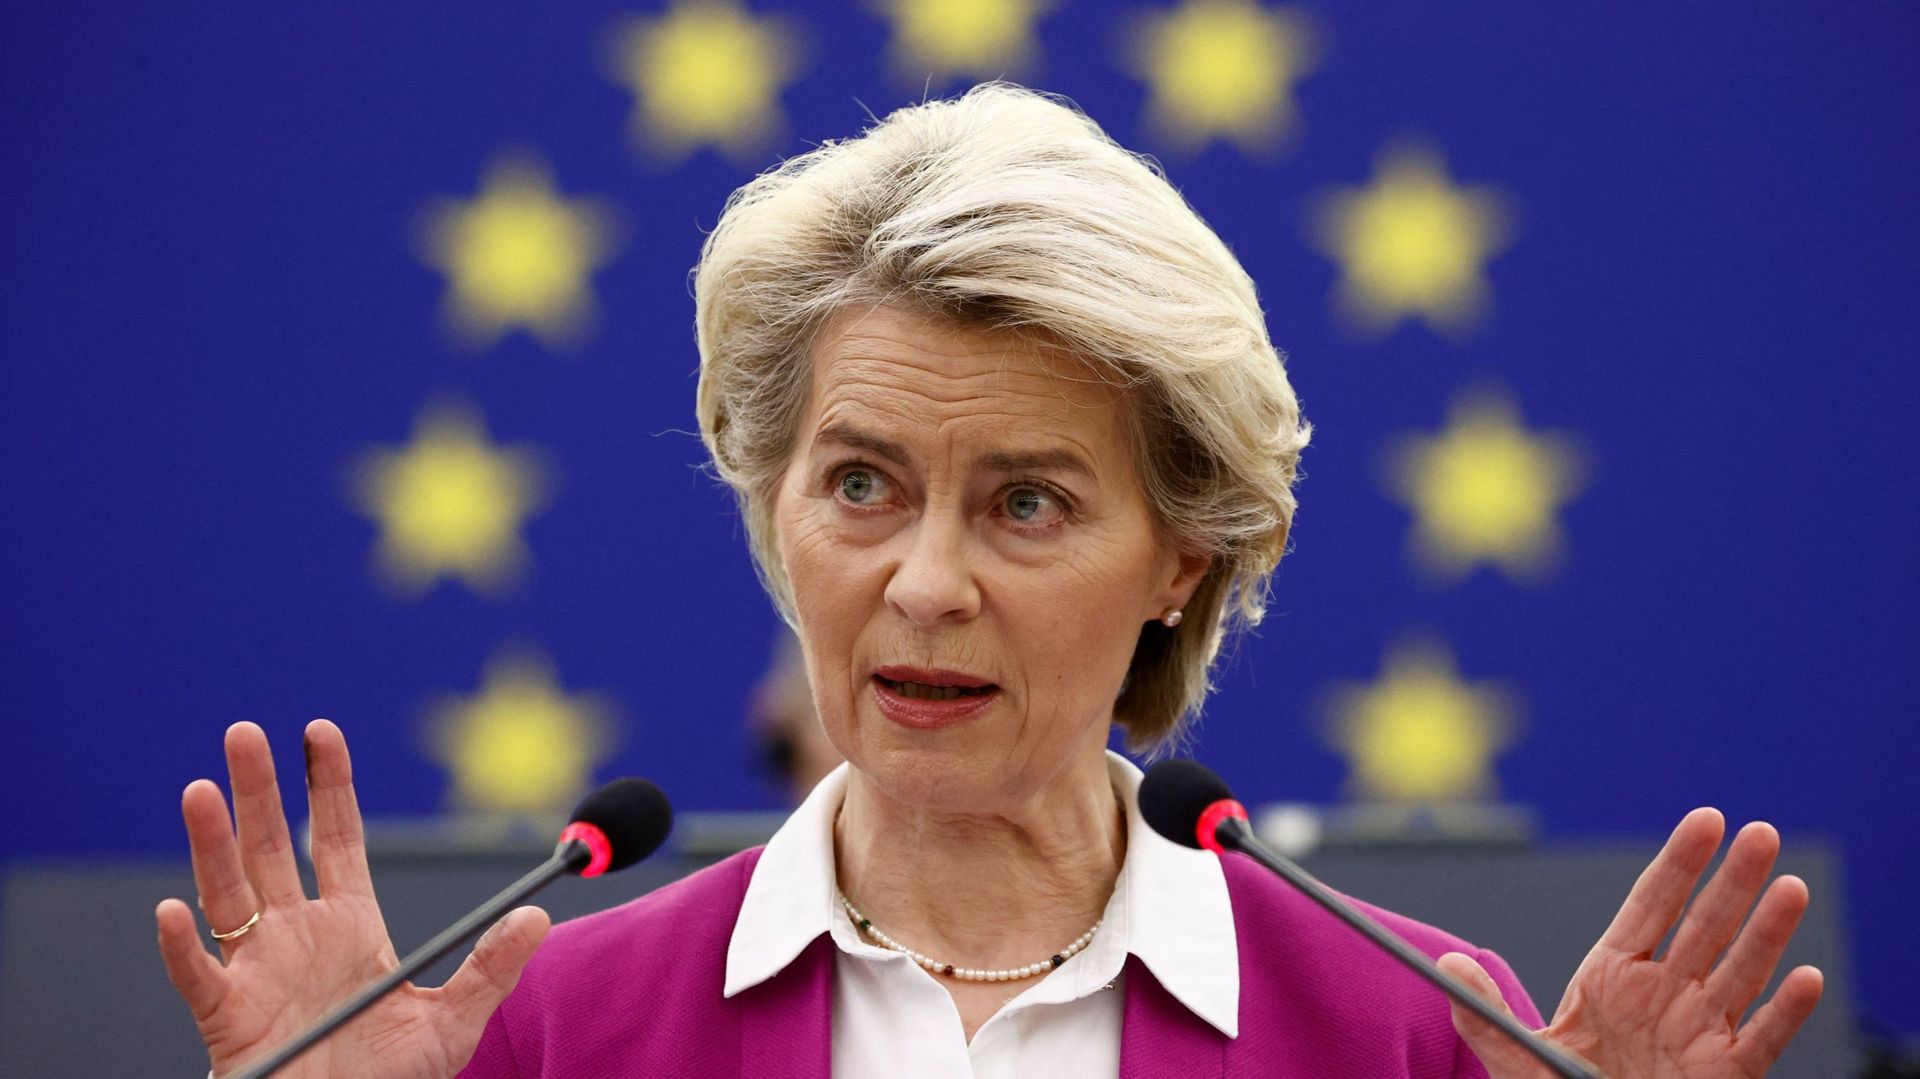 La présidente de la Commission européenne, Ursula von der Leyen, s’exprime devant le Parlement européen sur les conclusions du sommet des dirigeants d’octobre, à Strasbourg, en France, le 23 novembre 2021.